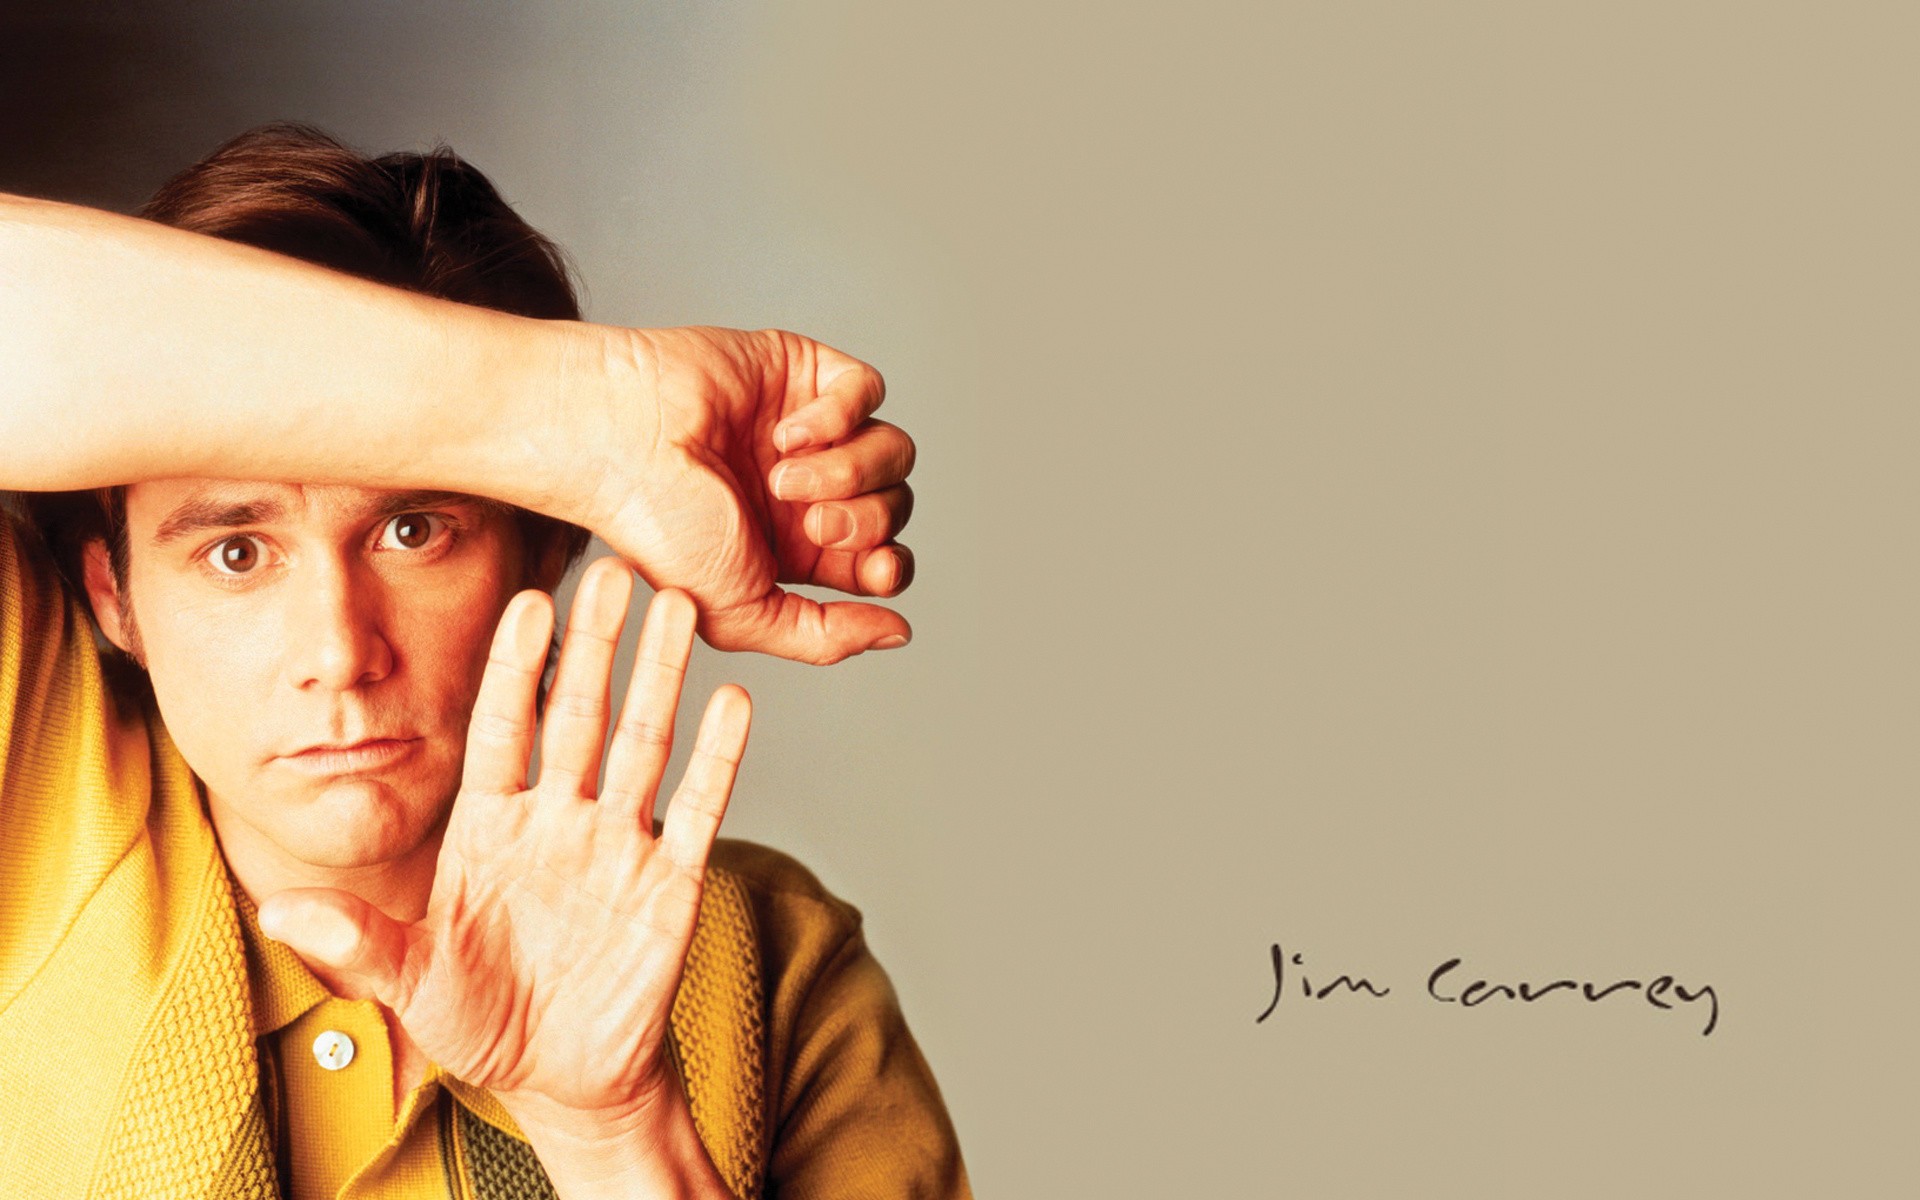 People 1920x1200 Jim Carrey actor men portrait hands celebrity Canadian simple background text caption